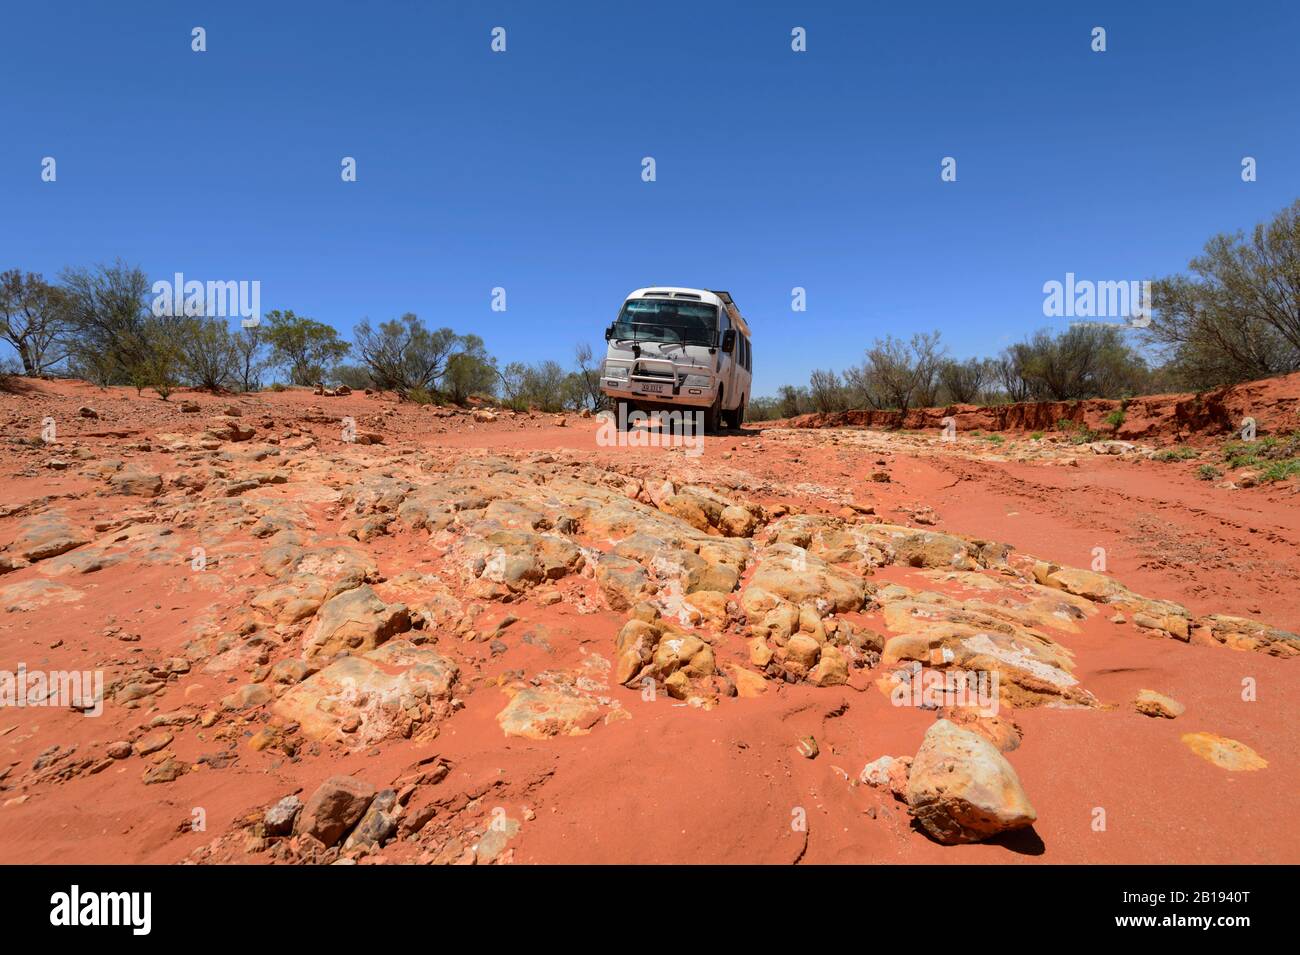 Geländewagen Toyota Coaster mit Geländewagen auf einer roten Straße im australischen Outback in der Nähe von Alice Springs, Northern Territory, NT, Australien Stockfoto